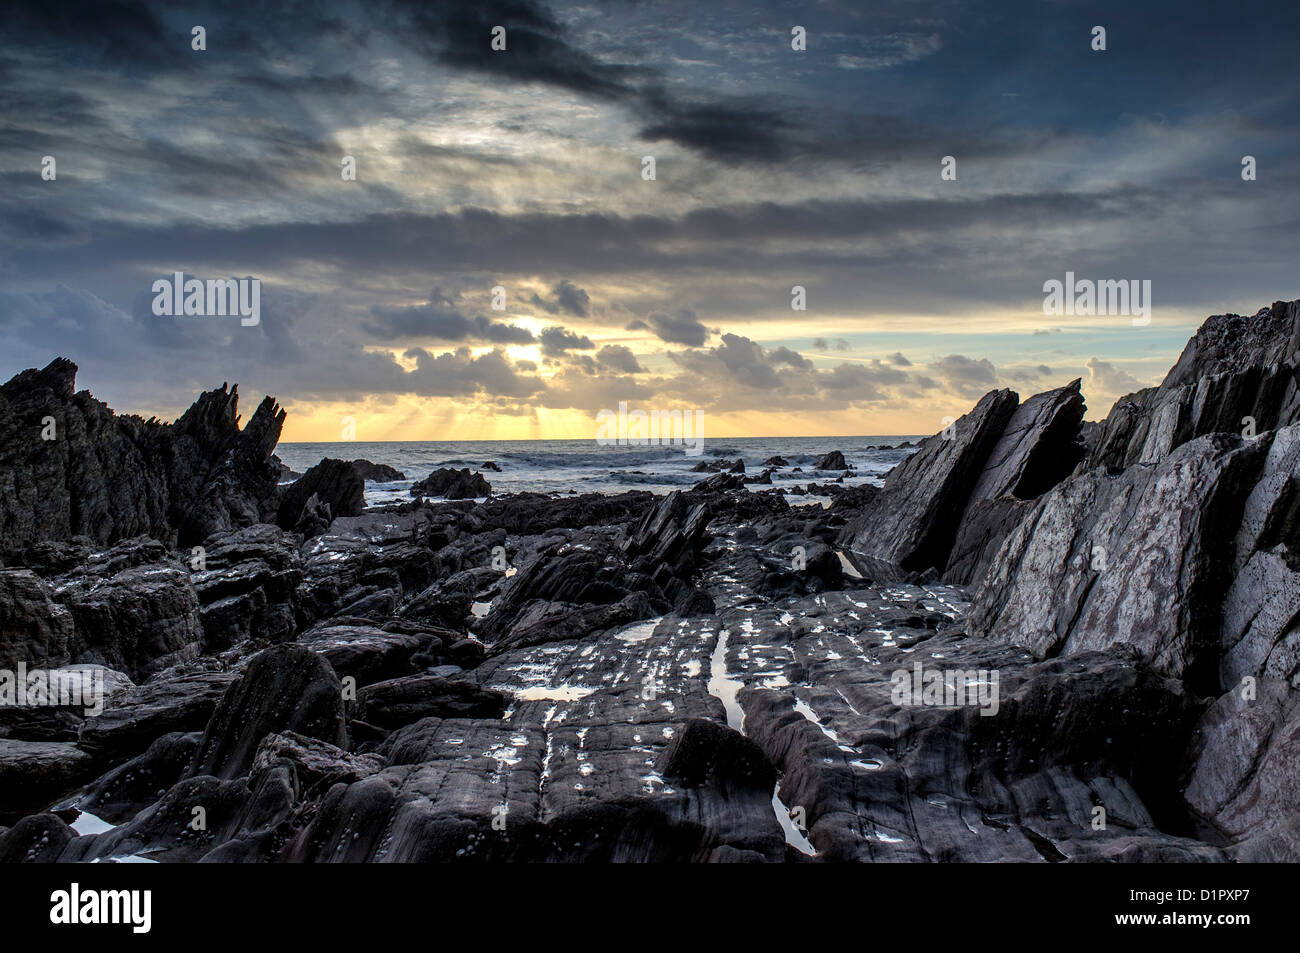 Vue spectaculaire sur un soleil d'hiver au-dessus de la mer depuis une plage de formations rocheuses inhabituelles et humides. Ayrmer Cove, Devon. ROYAUME-UNI Banque D'Images